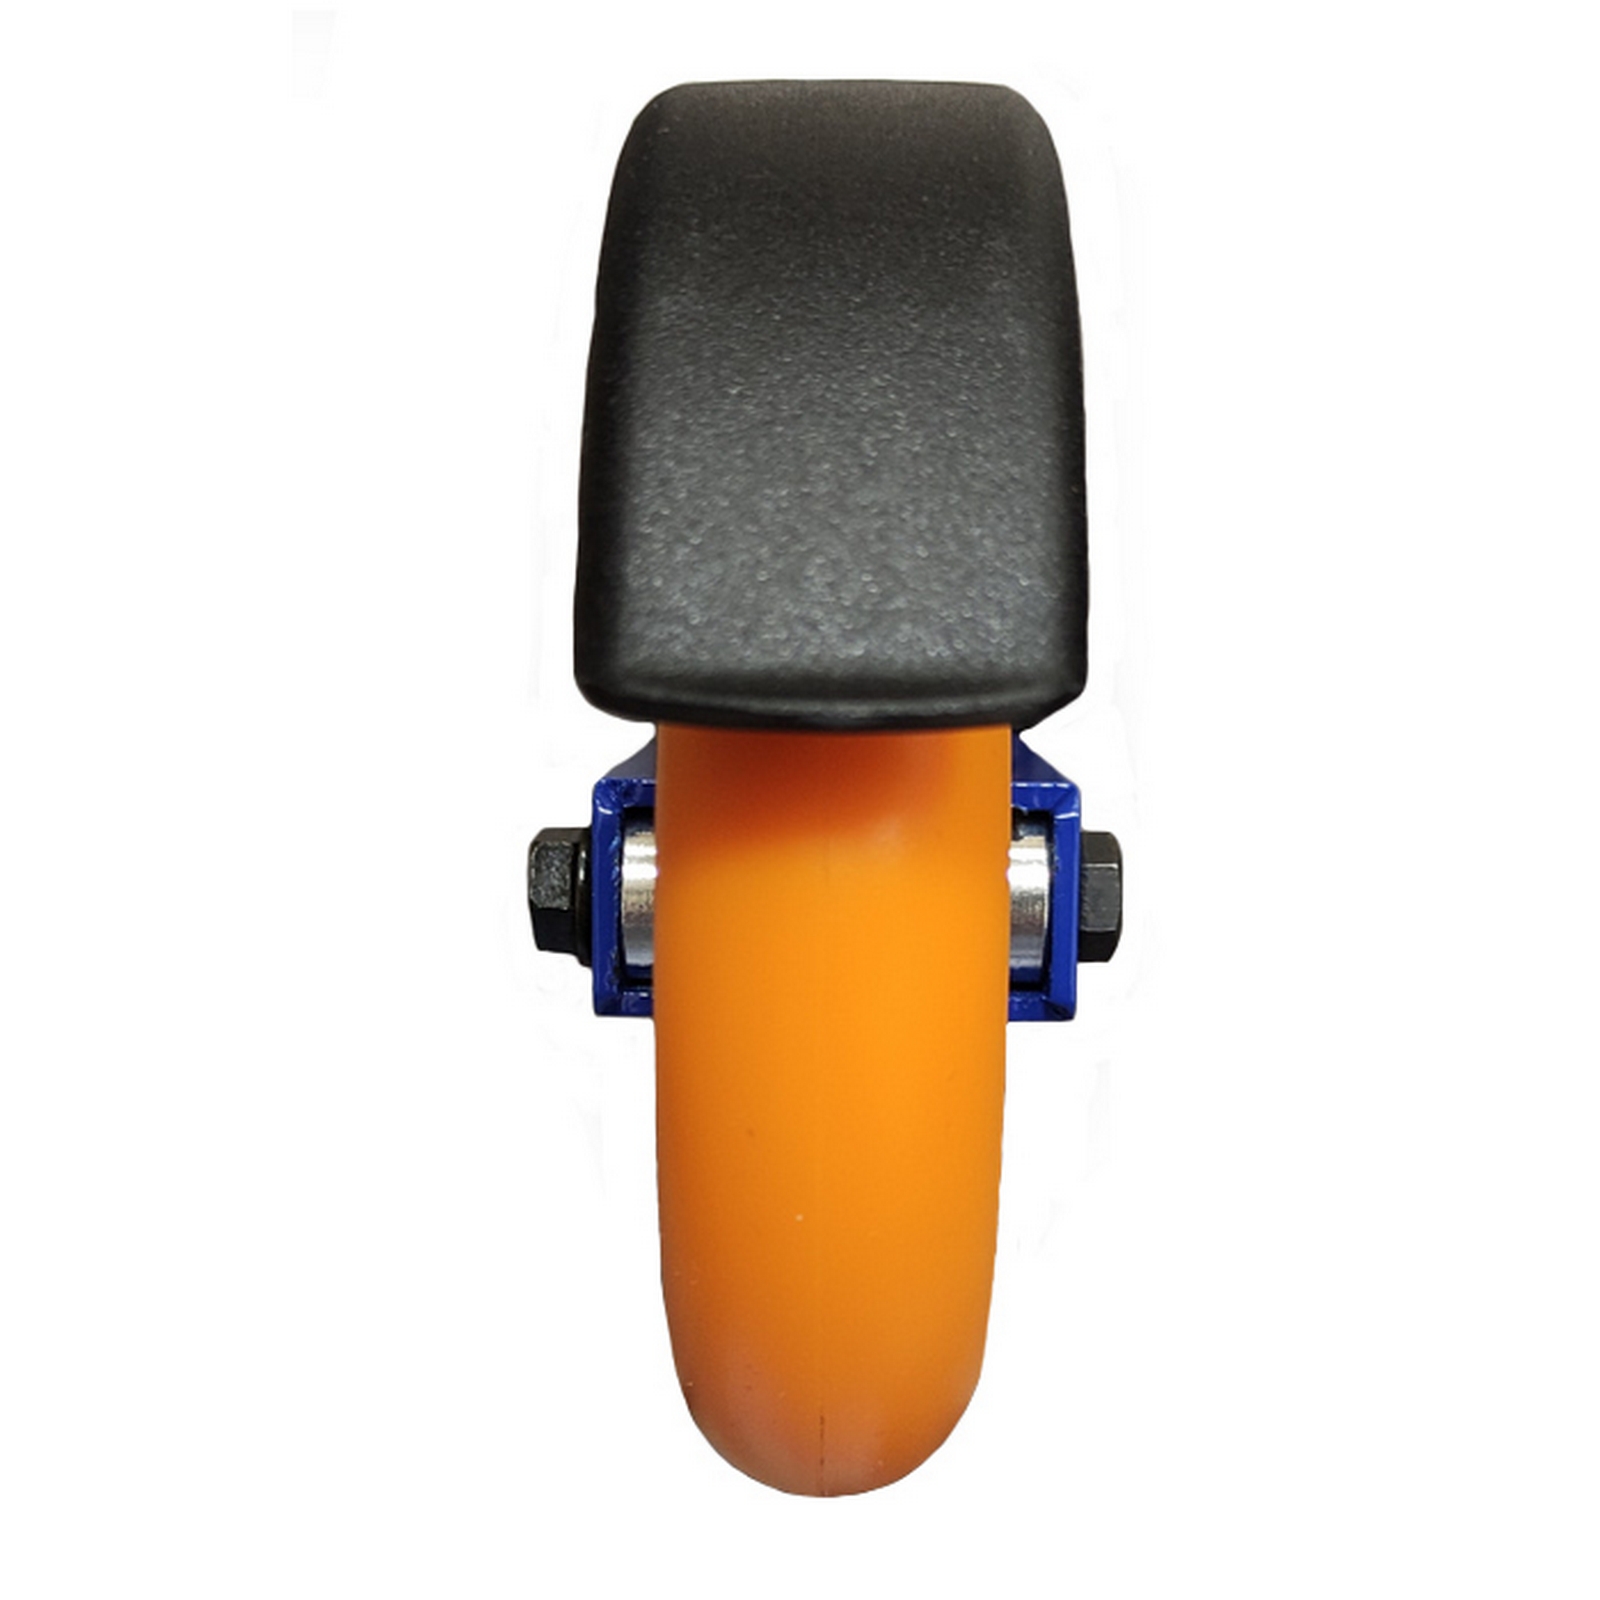 Лыжероллеры коньковые (533/86A_5/100х24/PU) Spine Concept Skate Light синий 1600_1600